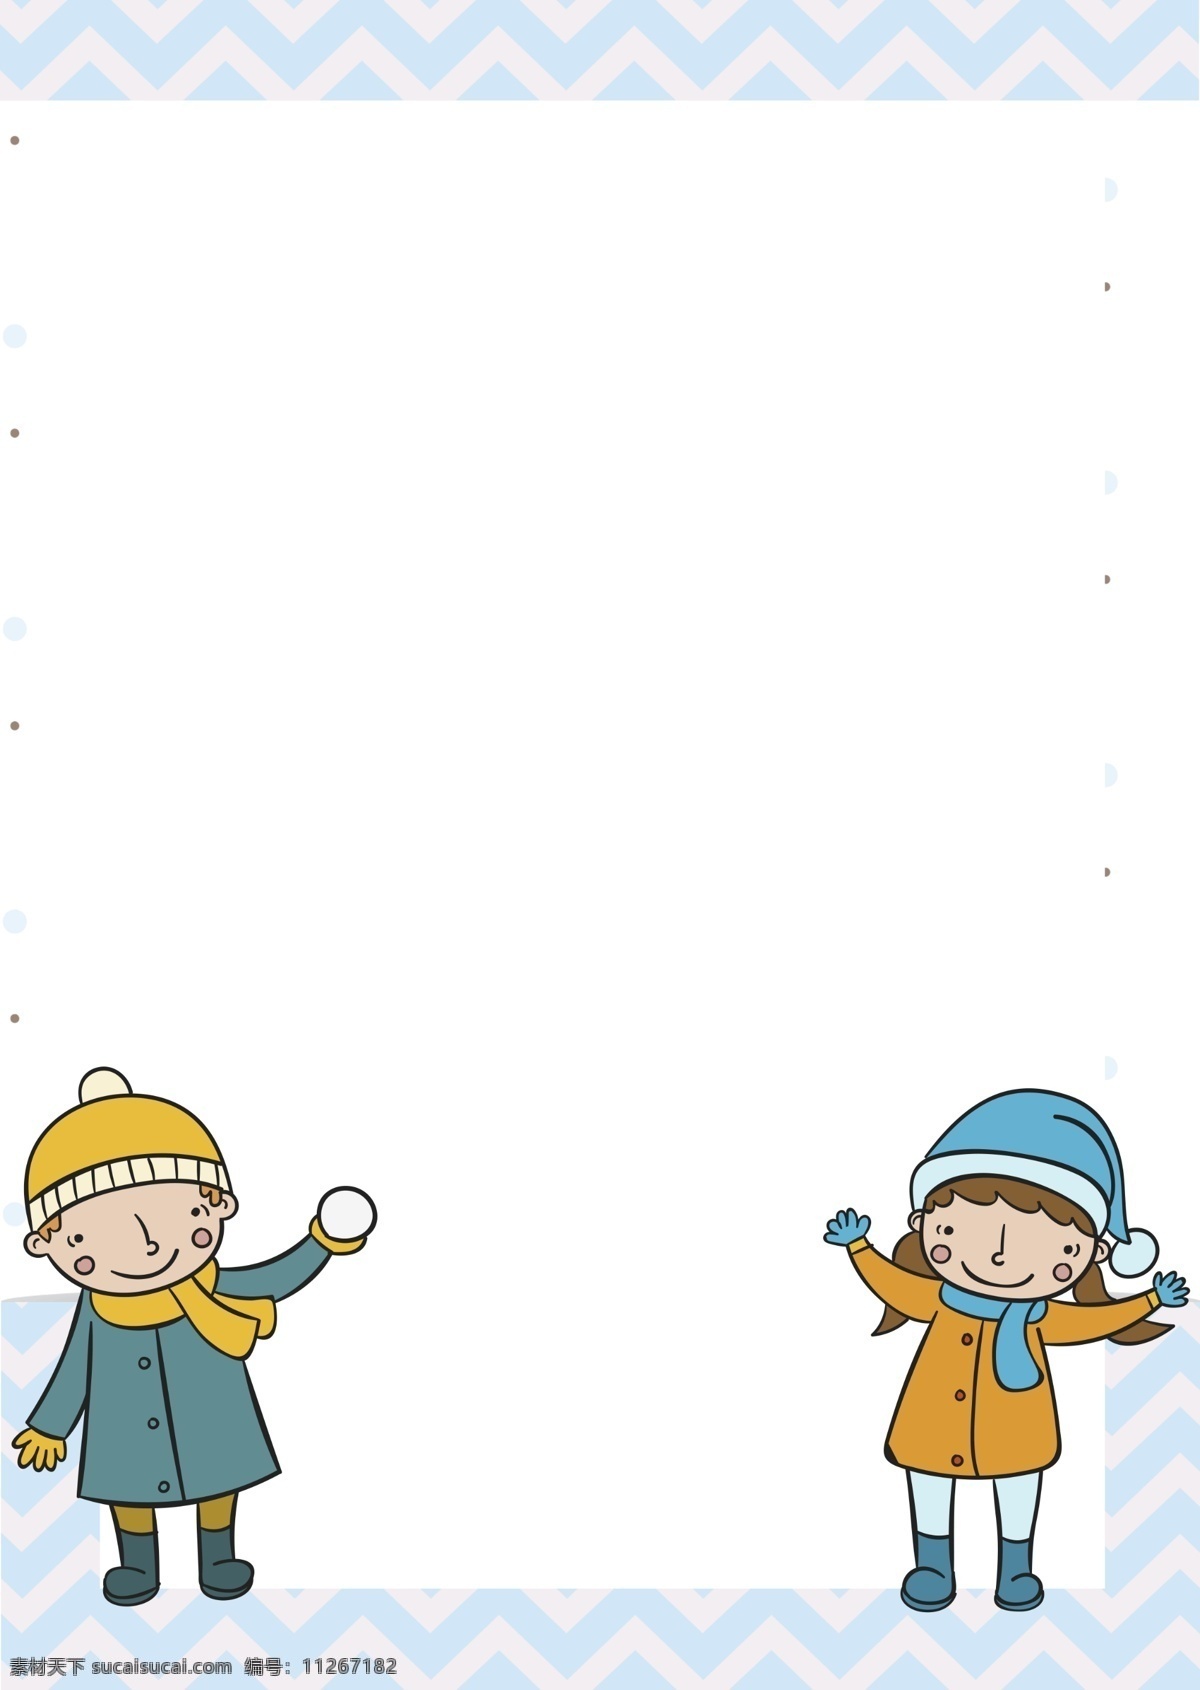 可爱 冬天 边框 插画 可爱的边框 清新边框 立体边框 创意边框 手绘边框 卡通边框 人物边框 白色的雪球